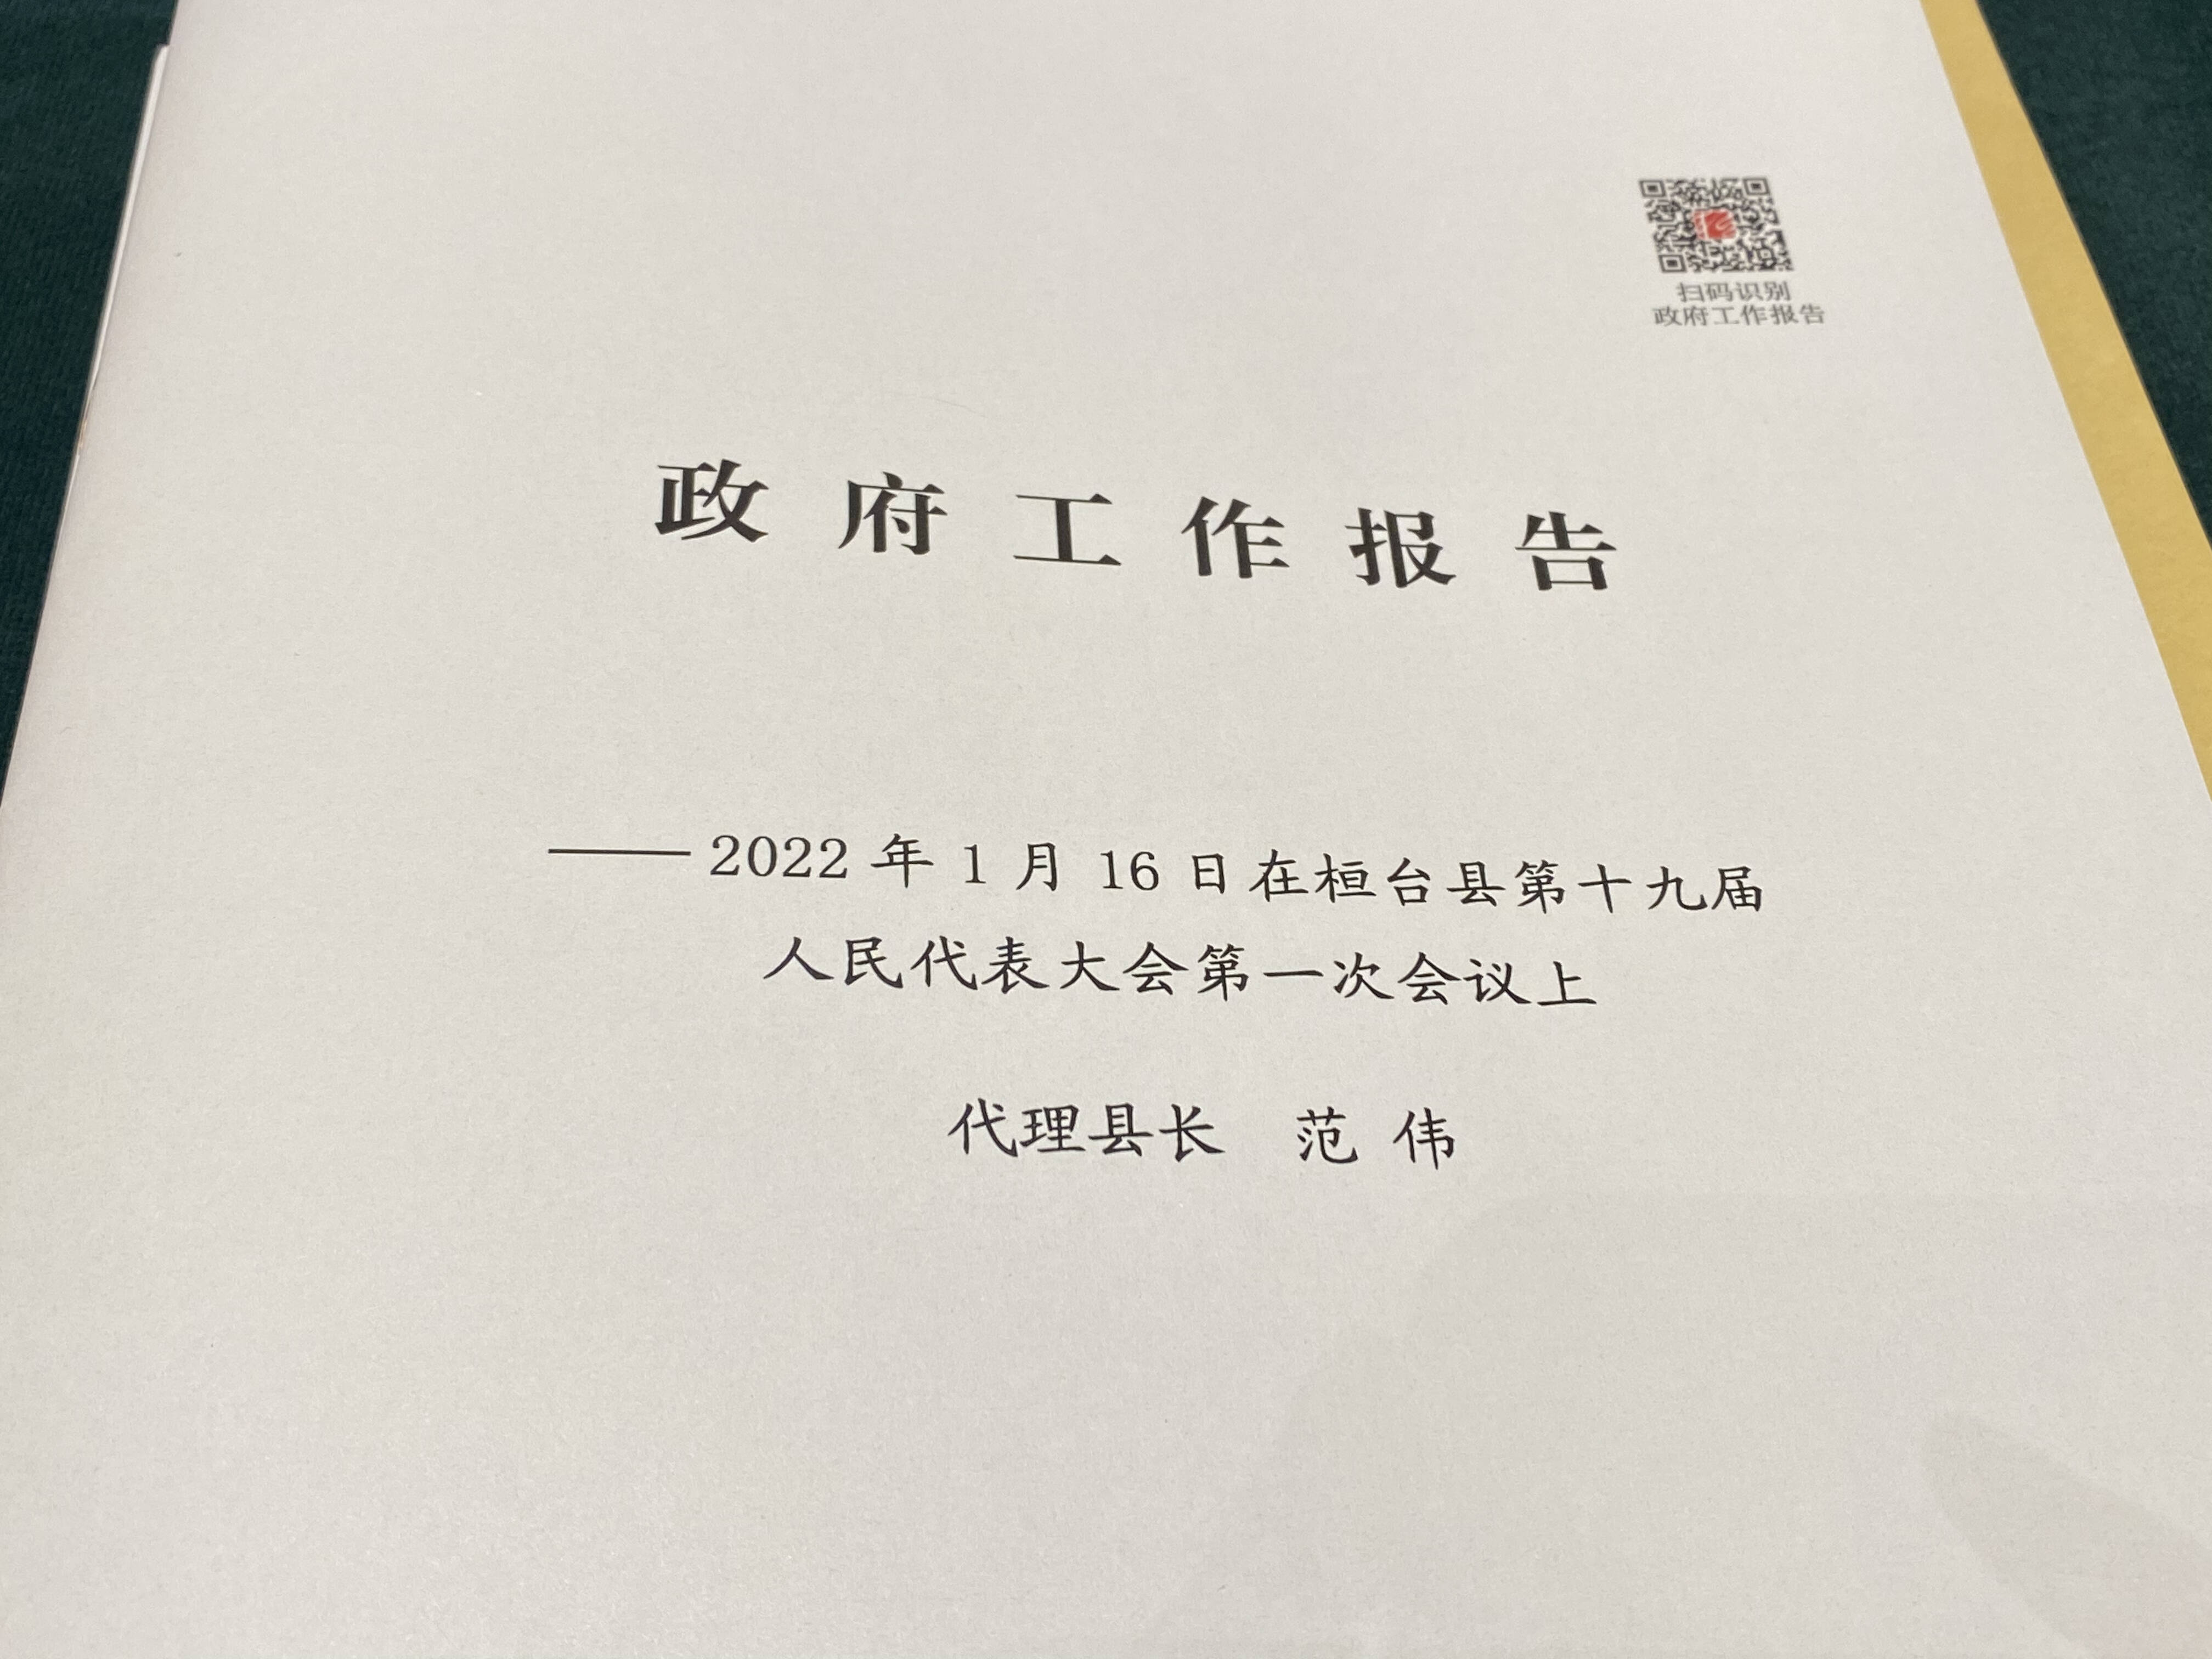 融码上报告2022年桓台县政府工作报告来了